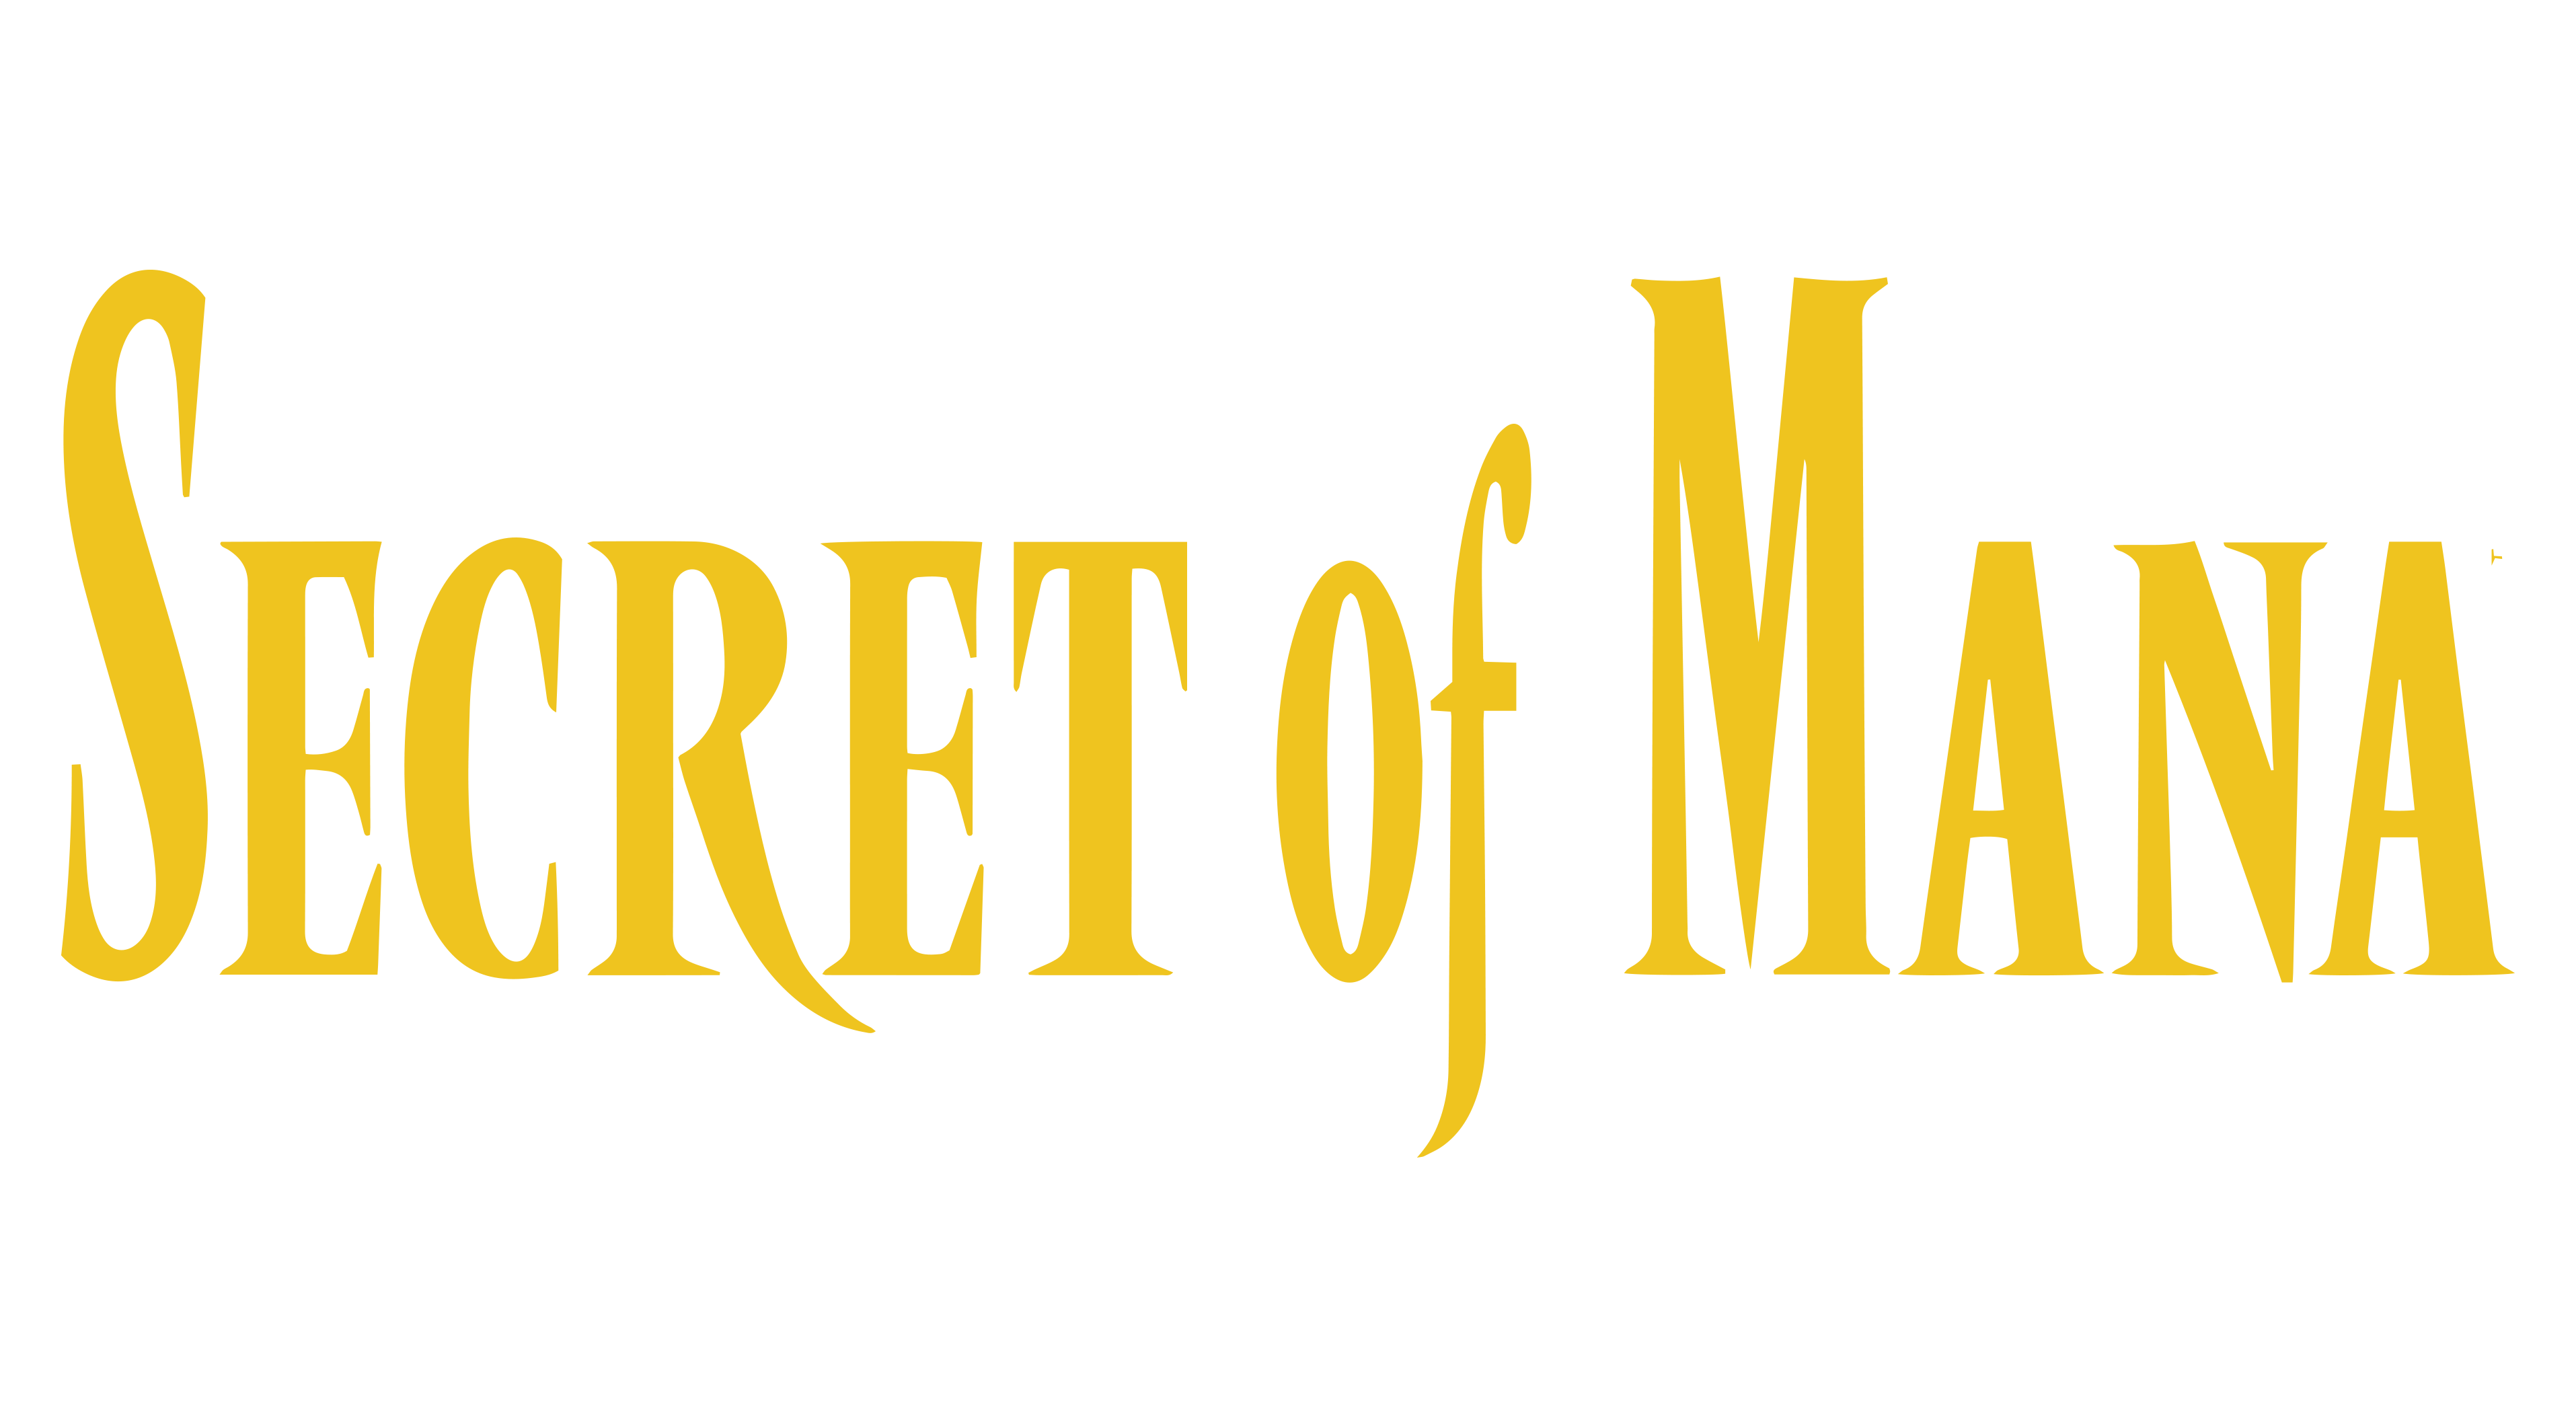 Trials of Mana secret of Mana 2 Super Nintendo SNES 